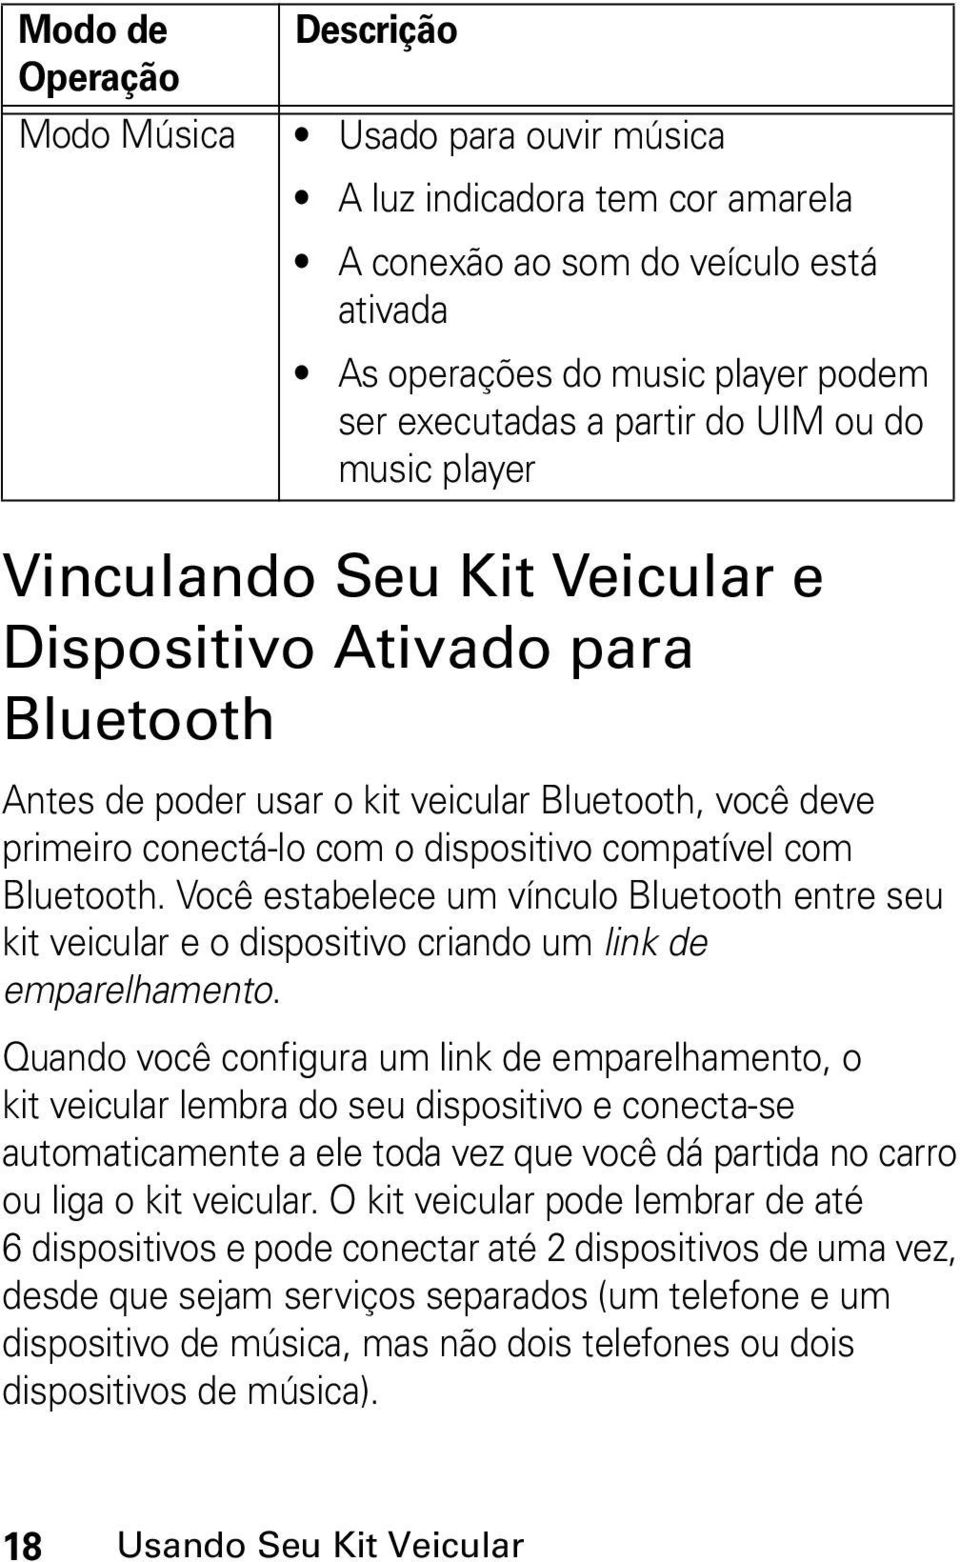 Bluetooth. Você estabelece um vínculo Bluetooth entre seu kit veicular e o dispositivo criando um link de emparelhamento.